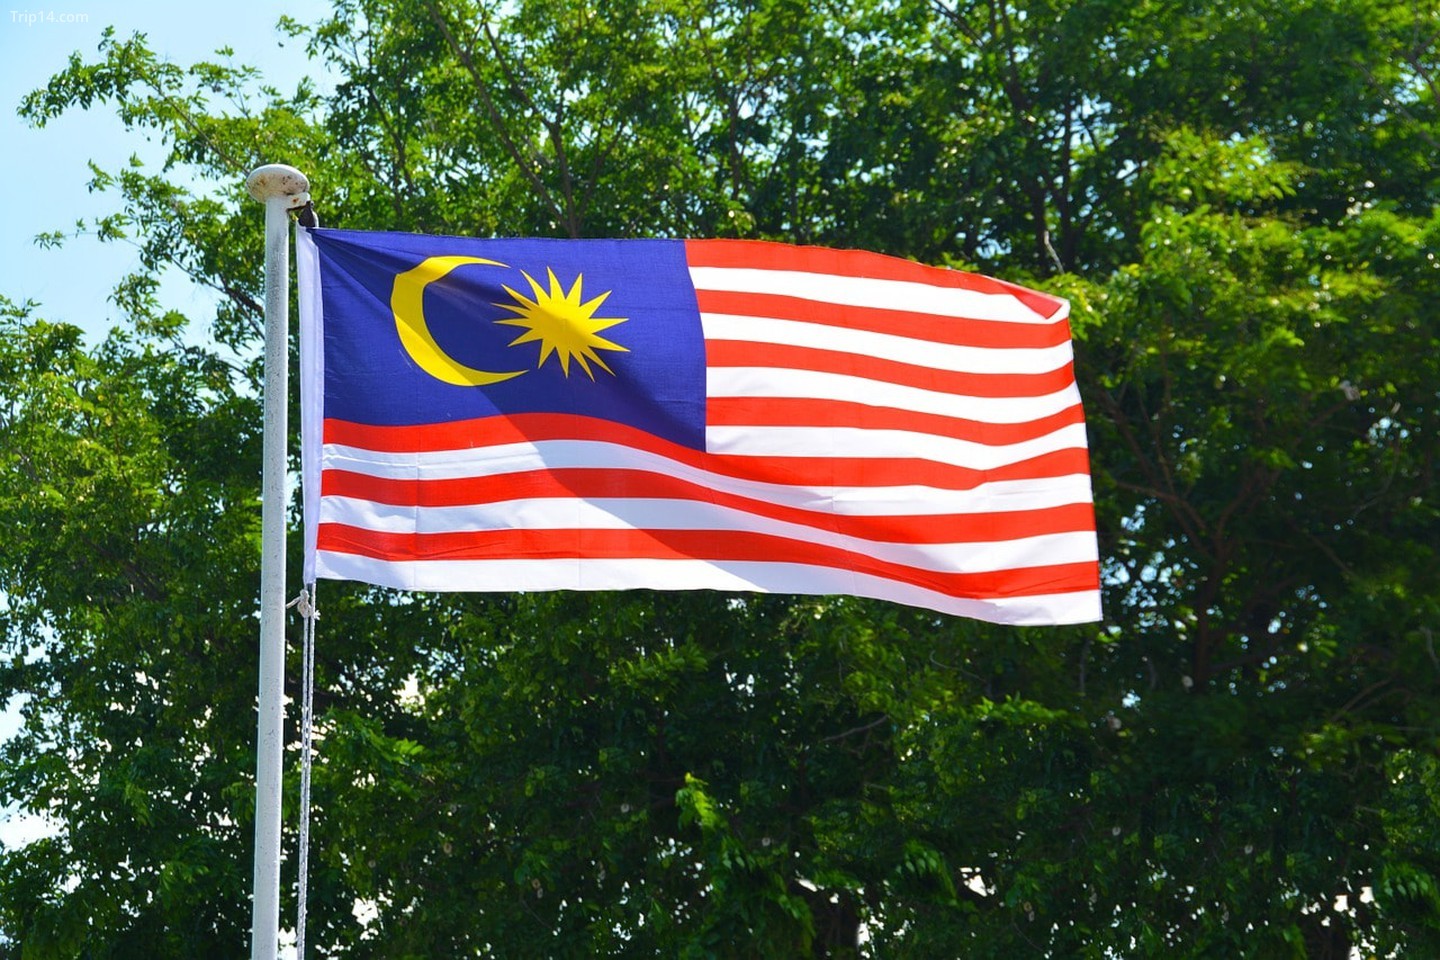  Bốn màu trên quốc kỳ Malaysia   |   